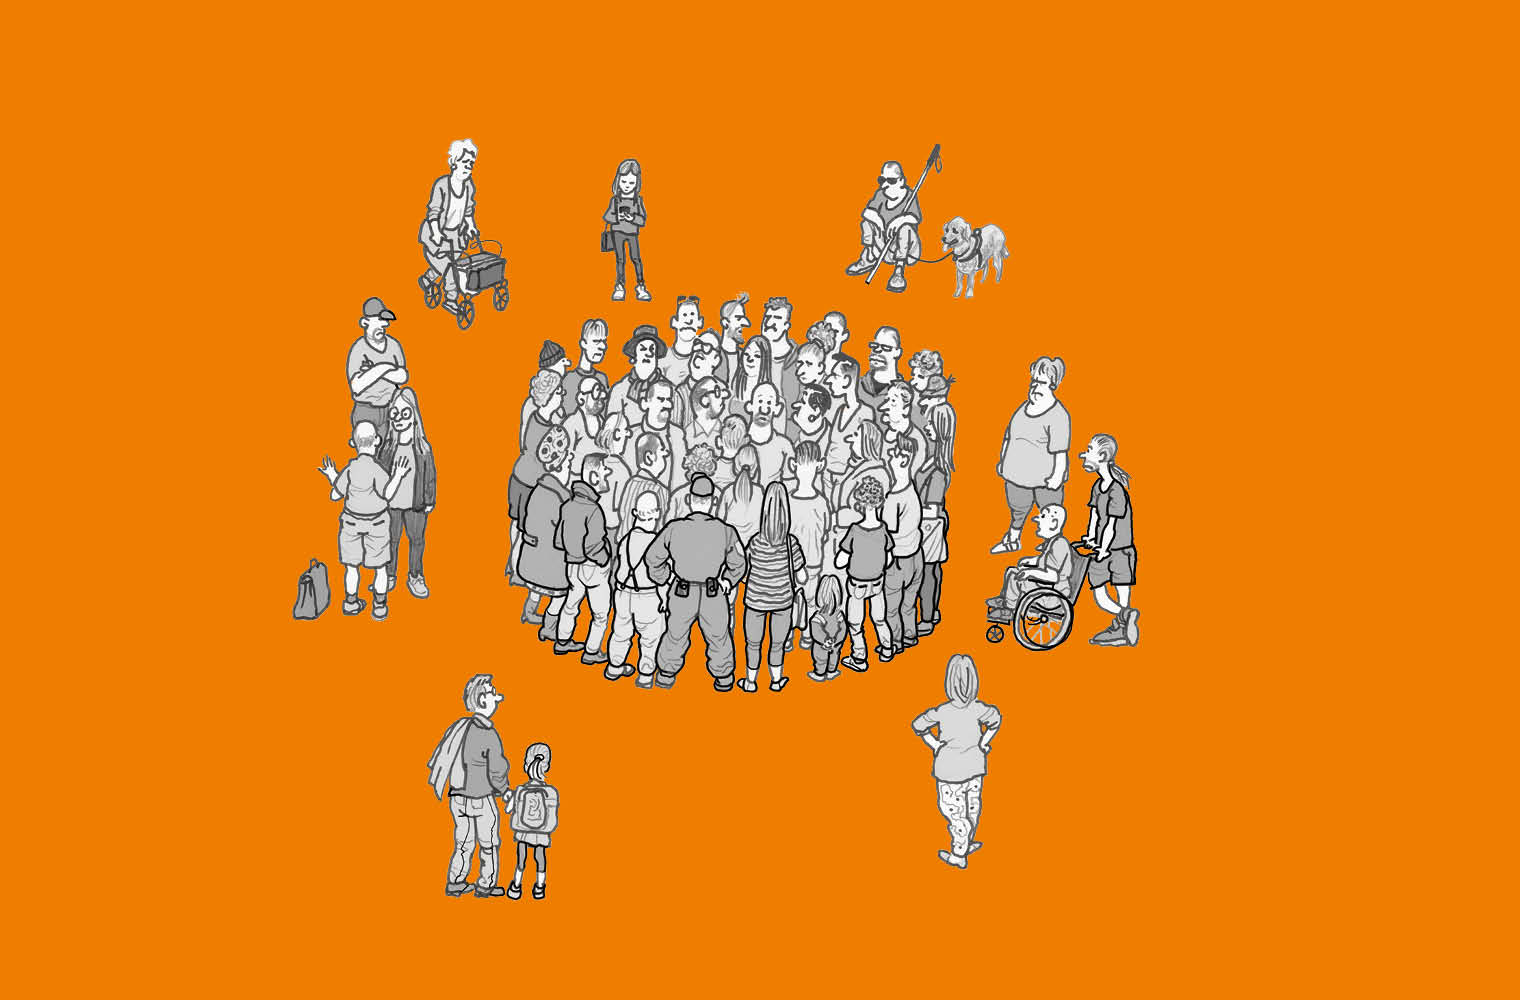 Eine grafische Darstellung einer diversen Gruppe von Menschen auf orangefarbenem Hintergrund. Die Gruppe besteht aus verschiedenen Personen, darunter sind Kinder, Erwachsene, eine Person im Rollstuhl, und sogar ein Hund. Die Personen sind in Schwarz-Weiß gezeichnet und stehen in einer kreisförmigen Anordnung.